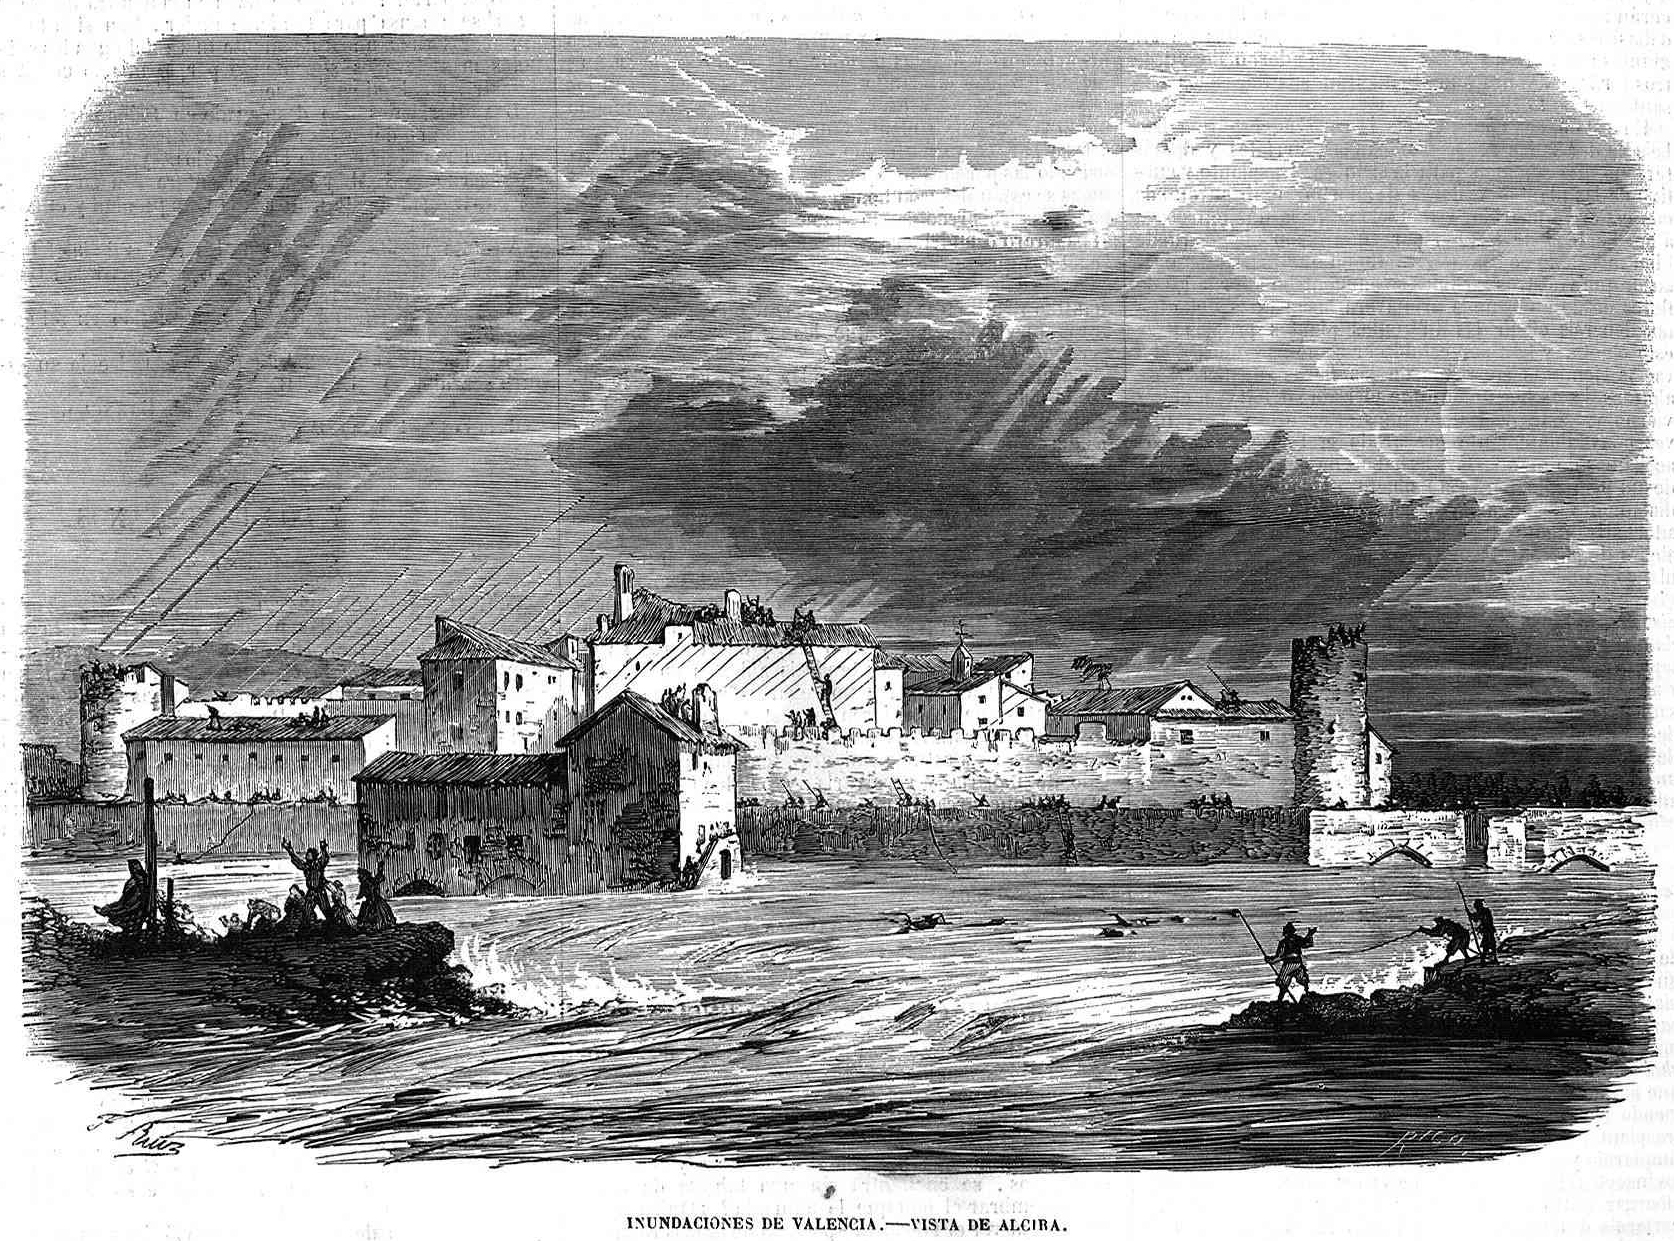 Inundaciones de Valencia de 1864, vista de Alcira.